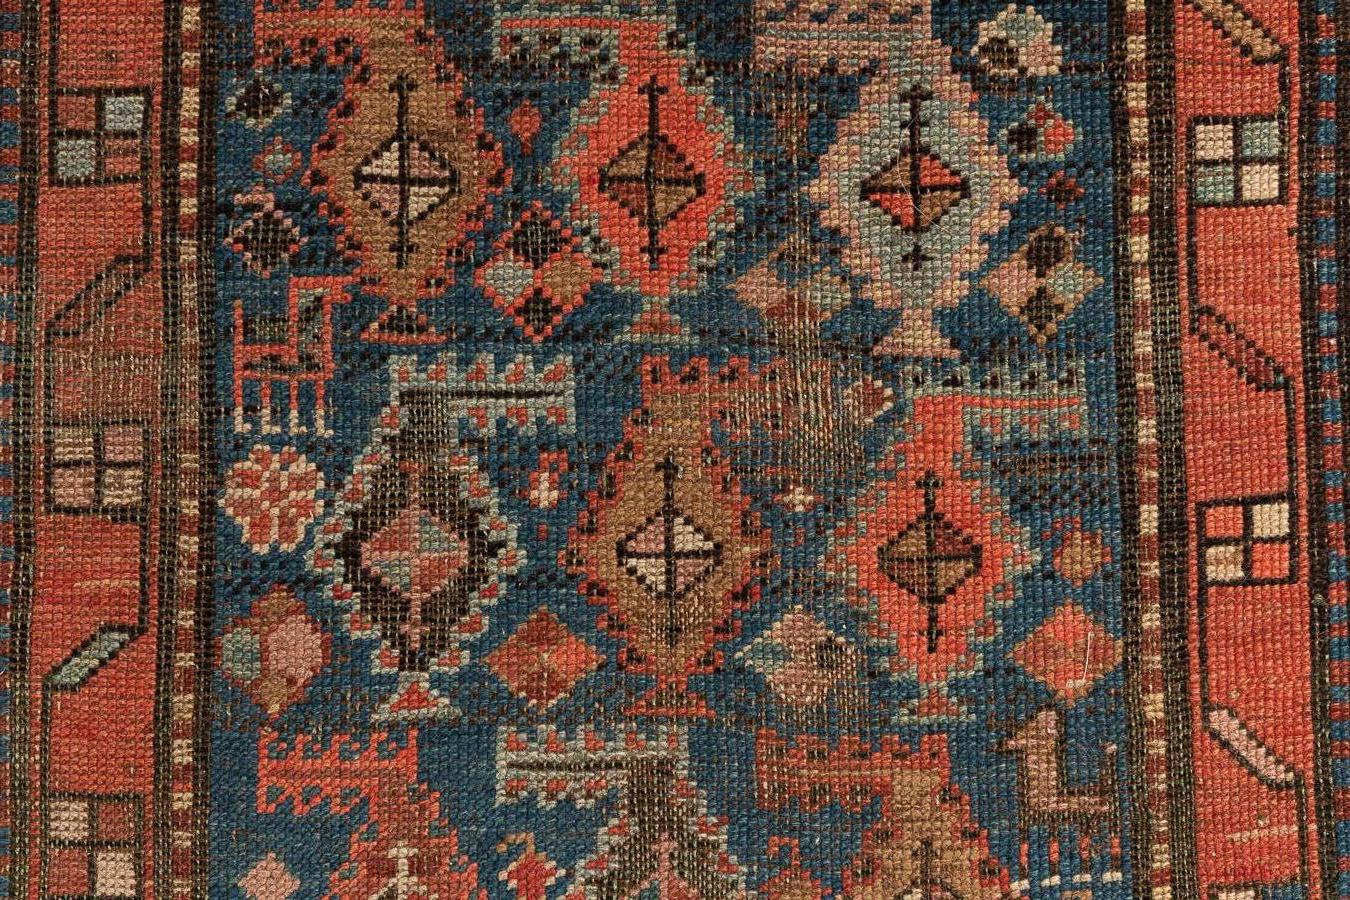 Karabagh - Südkaukasus

Kaukasischer Chan-Karabagh-Teppich vom Ende des 19. Jahrhunderts mit überwiegend hellblauer Farbe. Dieser Teppich hat in der Mitte Reihen von bunten Bändern, die an einem Griff aufgehängt sind, der die Richtung zwischen den